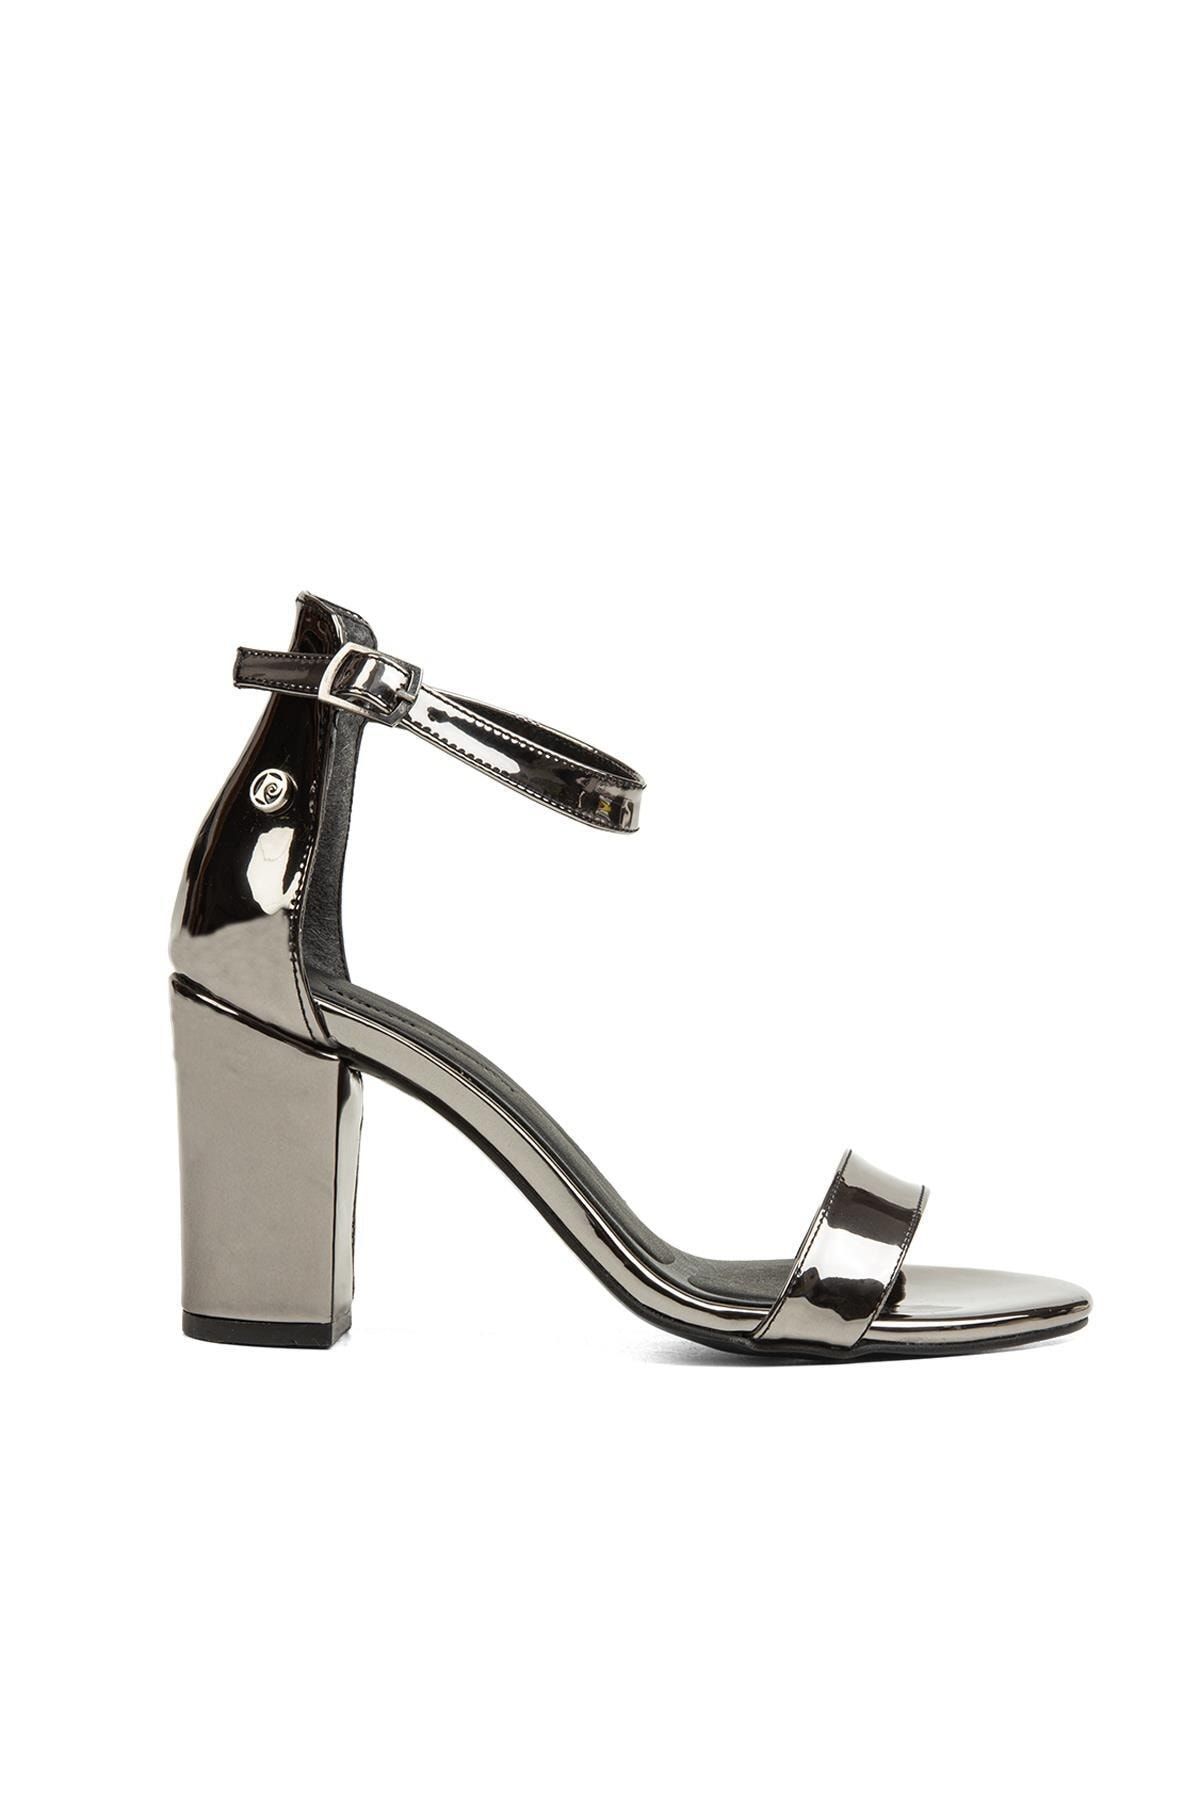 Pierre Cardin ® | Pc-52200-3951 Platin - Kadın Topuklu Ayakkabı